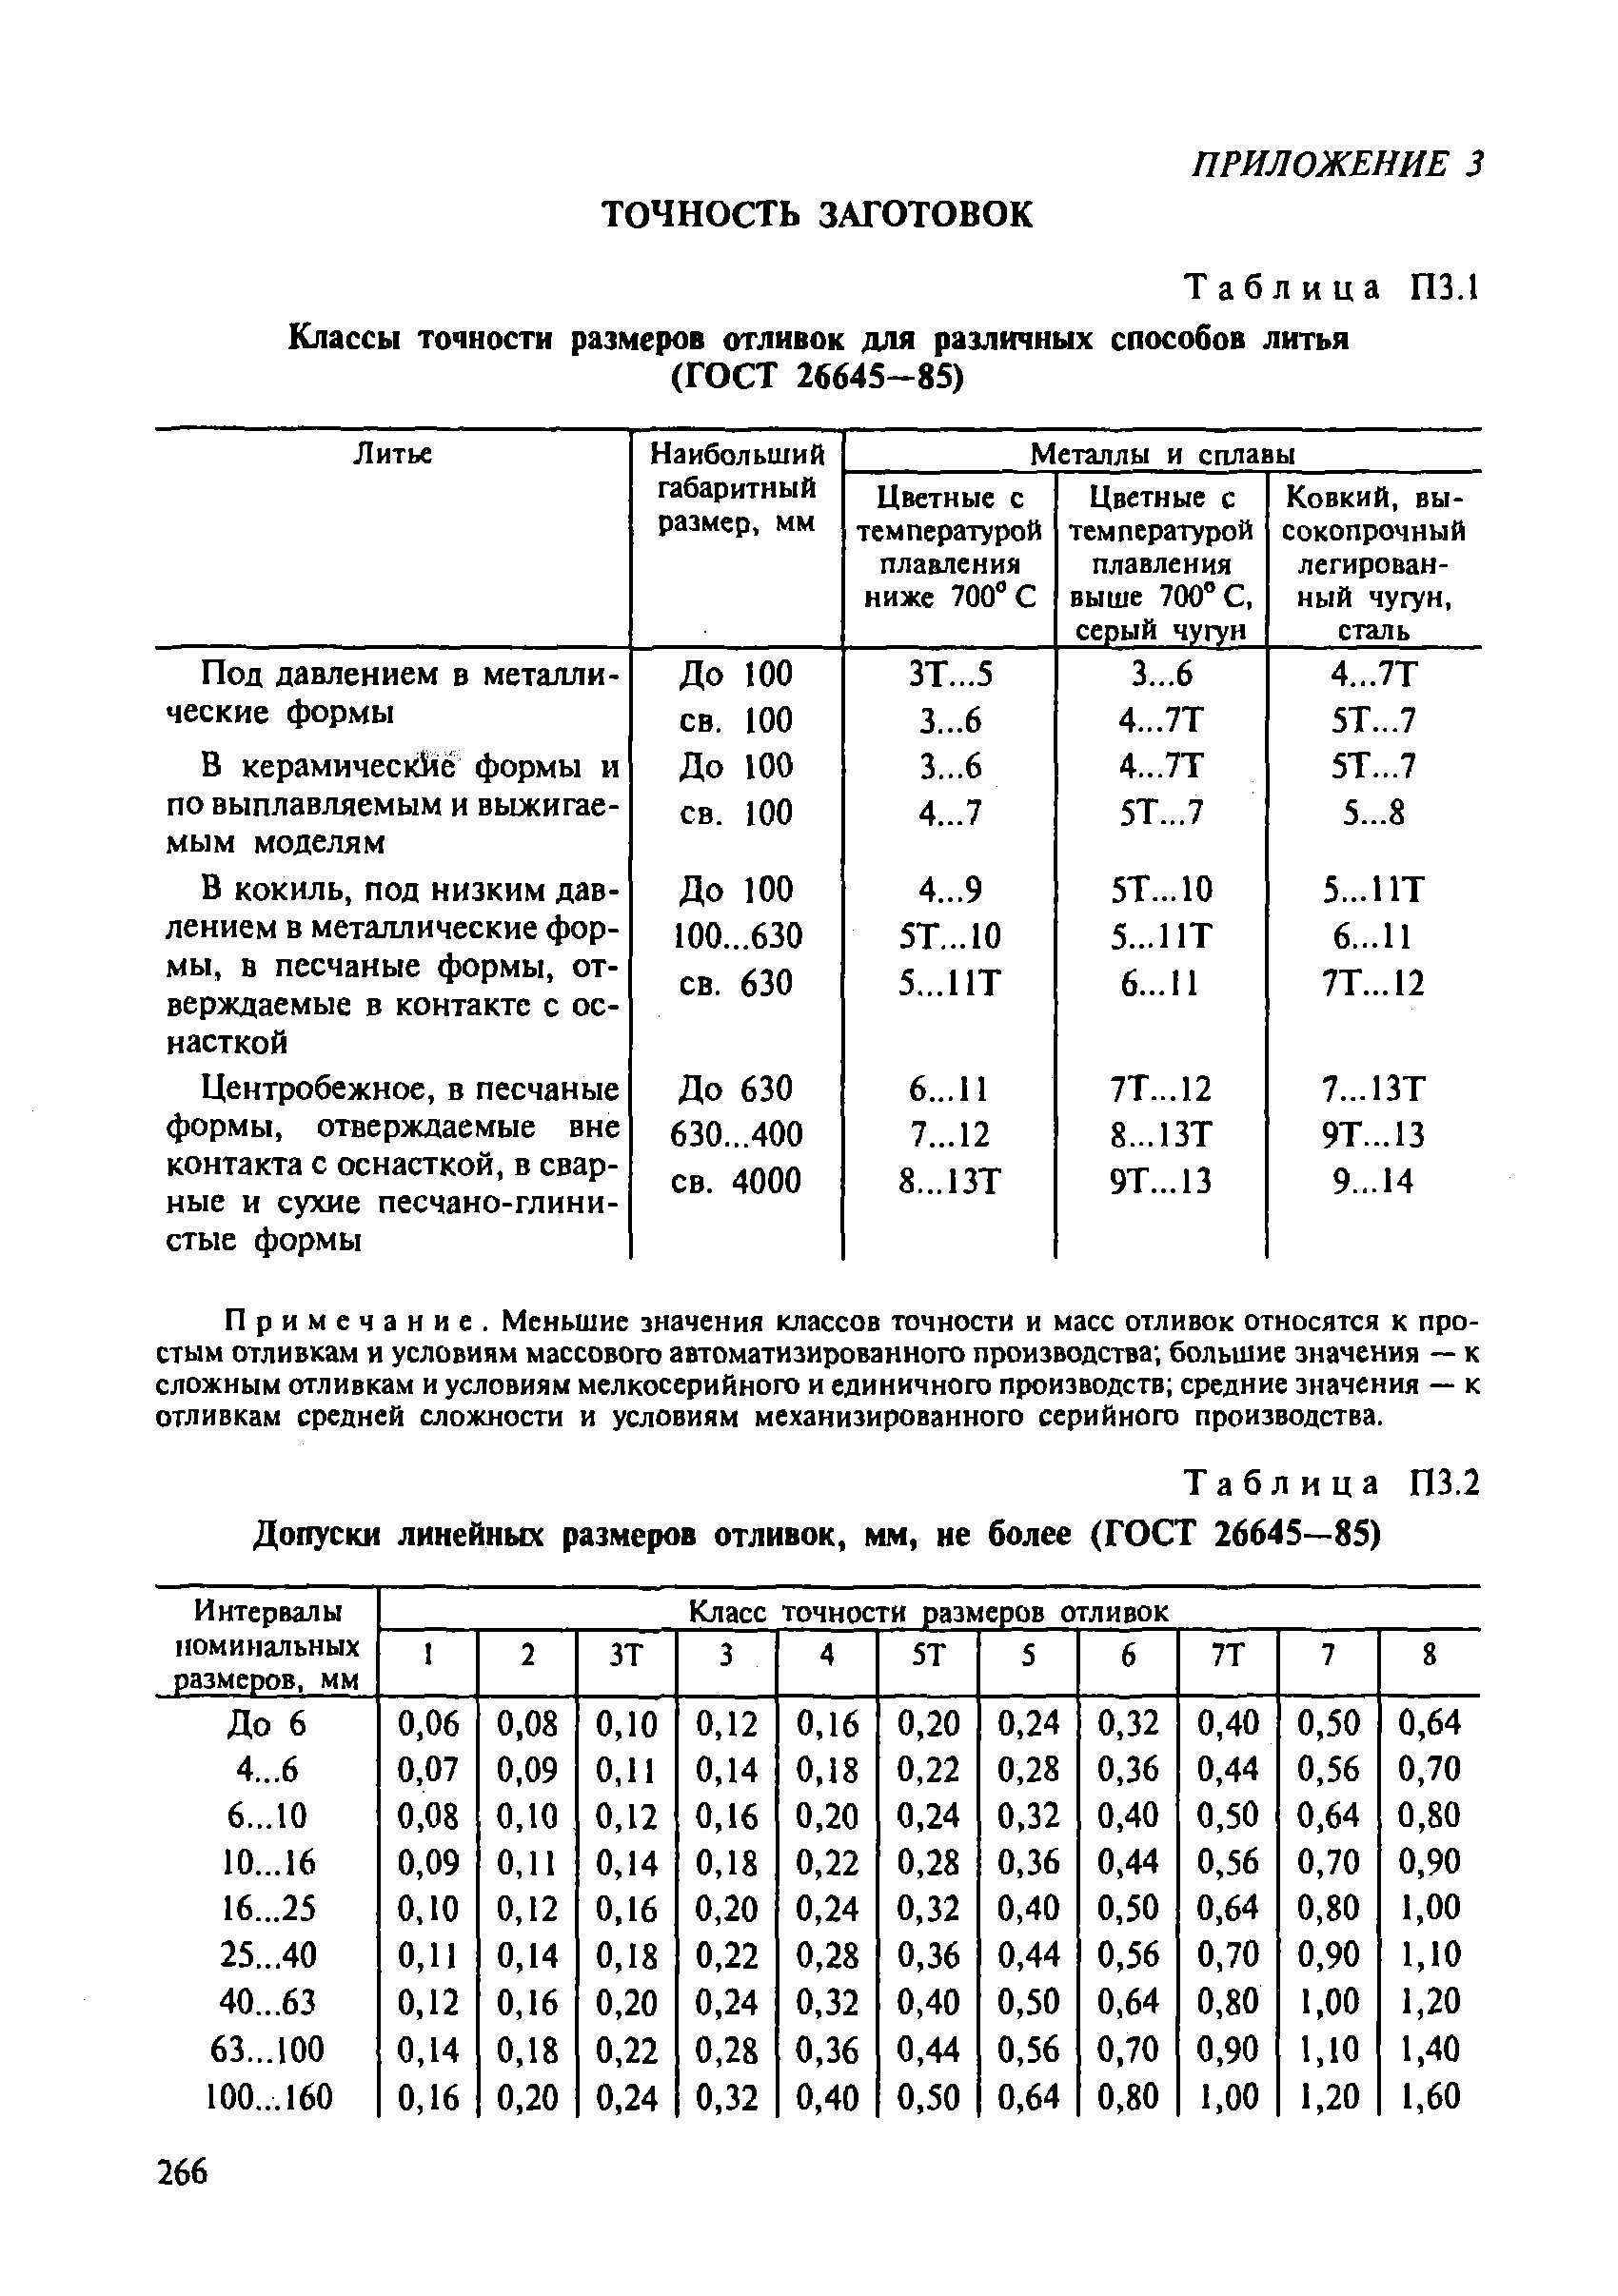 Таблица П3.2 Допуски линейных размеров отливок, мм, не более (ГОСТ 26645—85)
